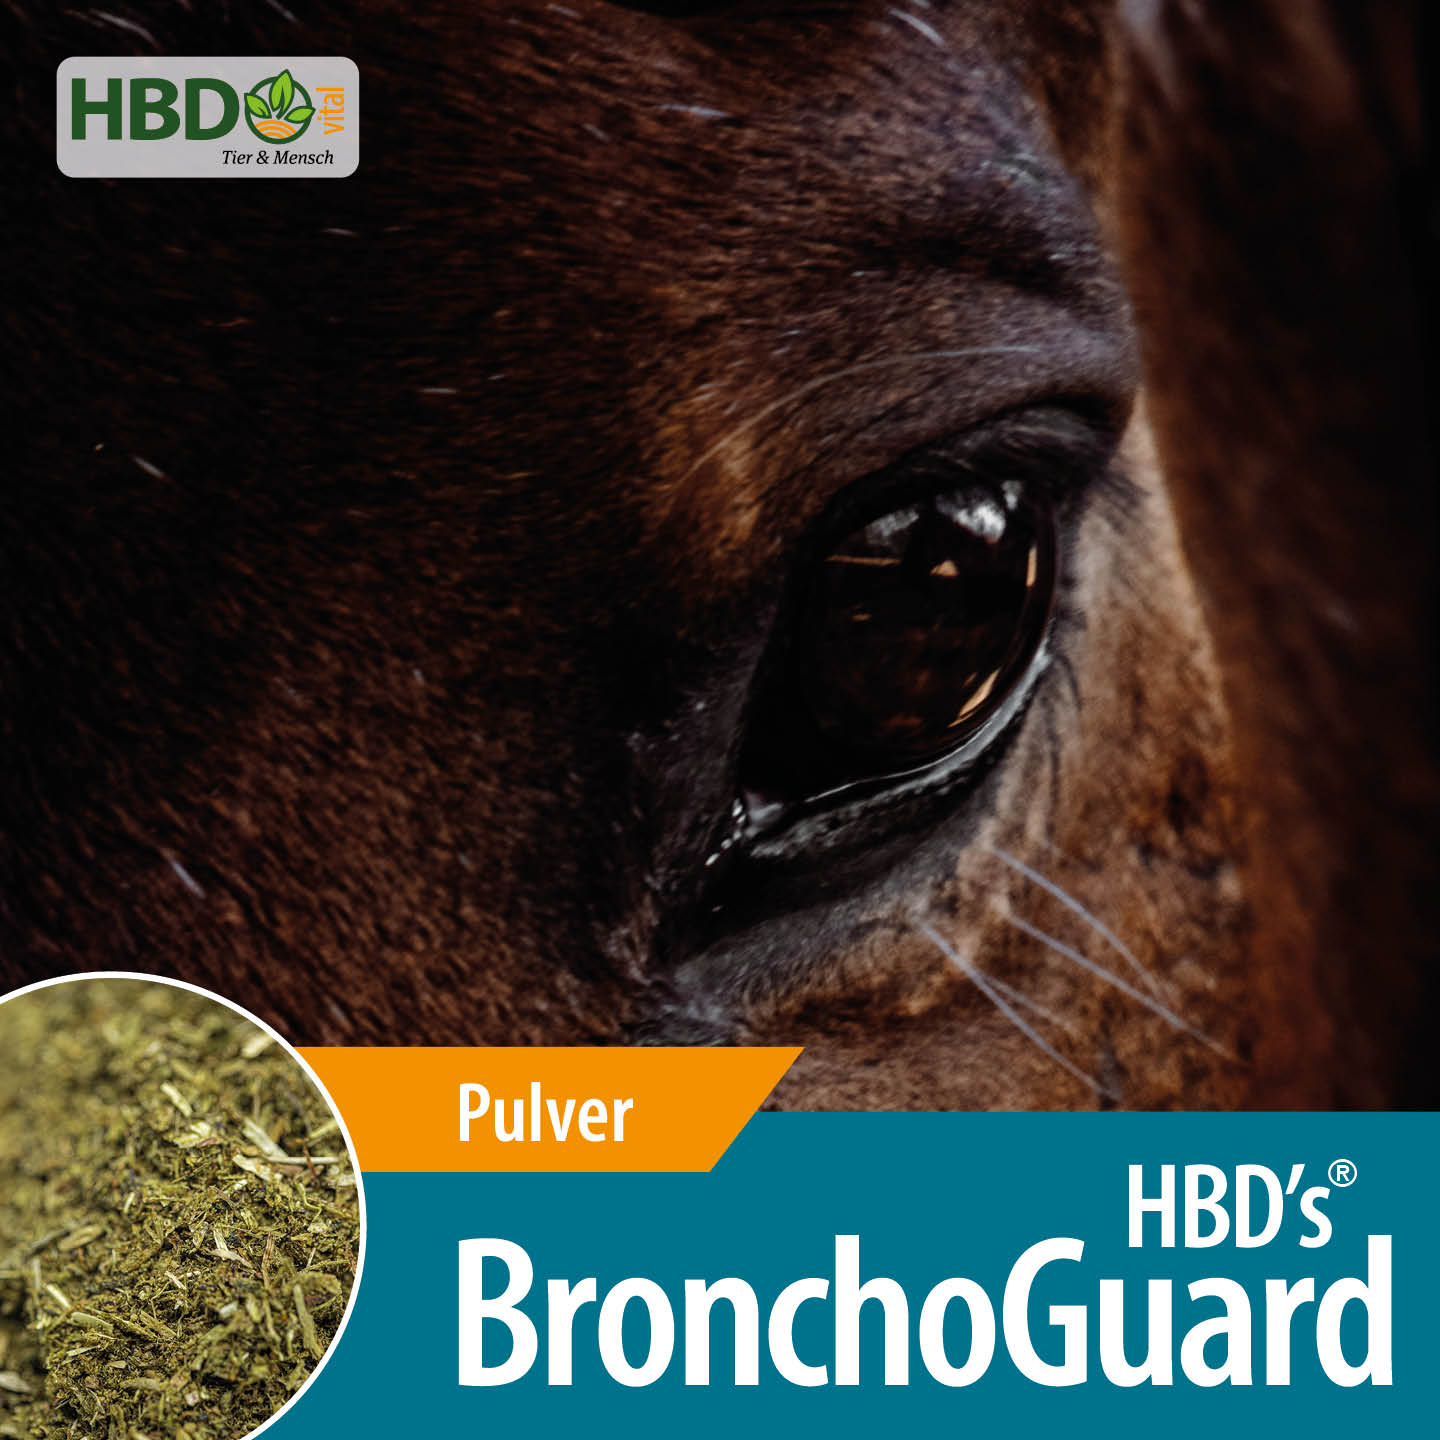 Shopbild für HBD’s BronchoGuard für Pferde - Das Bild zeigt den Produktnamen sowie den Hinweis, dass es sich um Pulver handelt. Eine Nahaufnahme des Kopfes eines braunen Pferdes